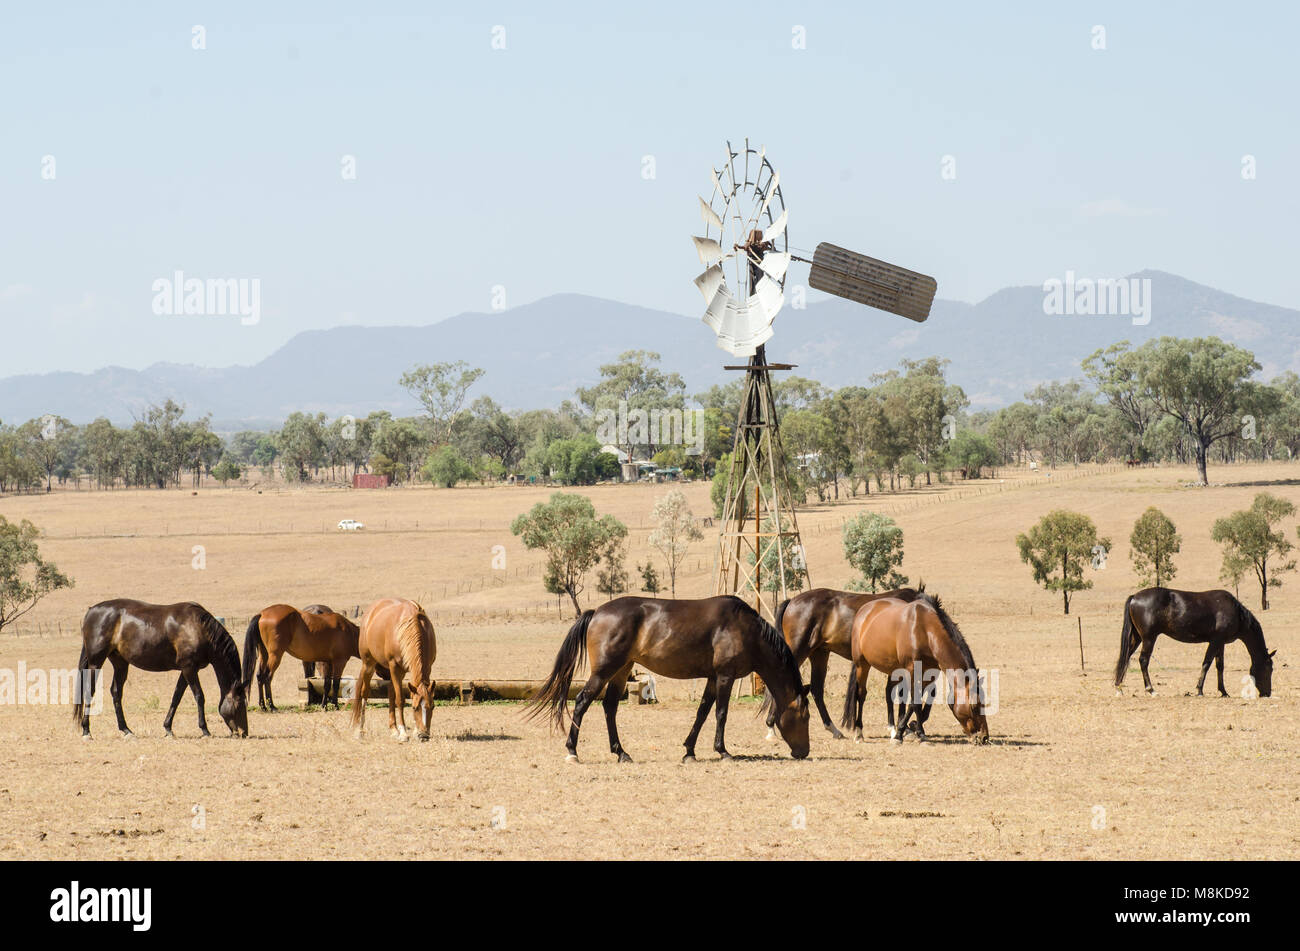 Pferde Spülsystem für Futtermittel, das in die trockenen Bedingungen um eine Windmühle Wassertrog. Dunstigen Himmel in der Nähe von Buschbränden, NSW Australien Stockfoto